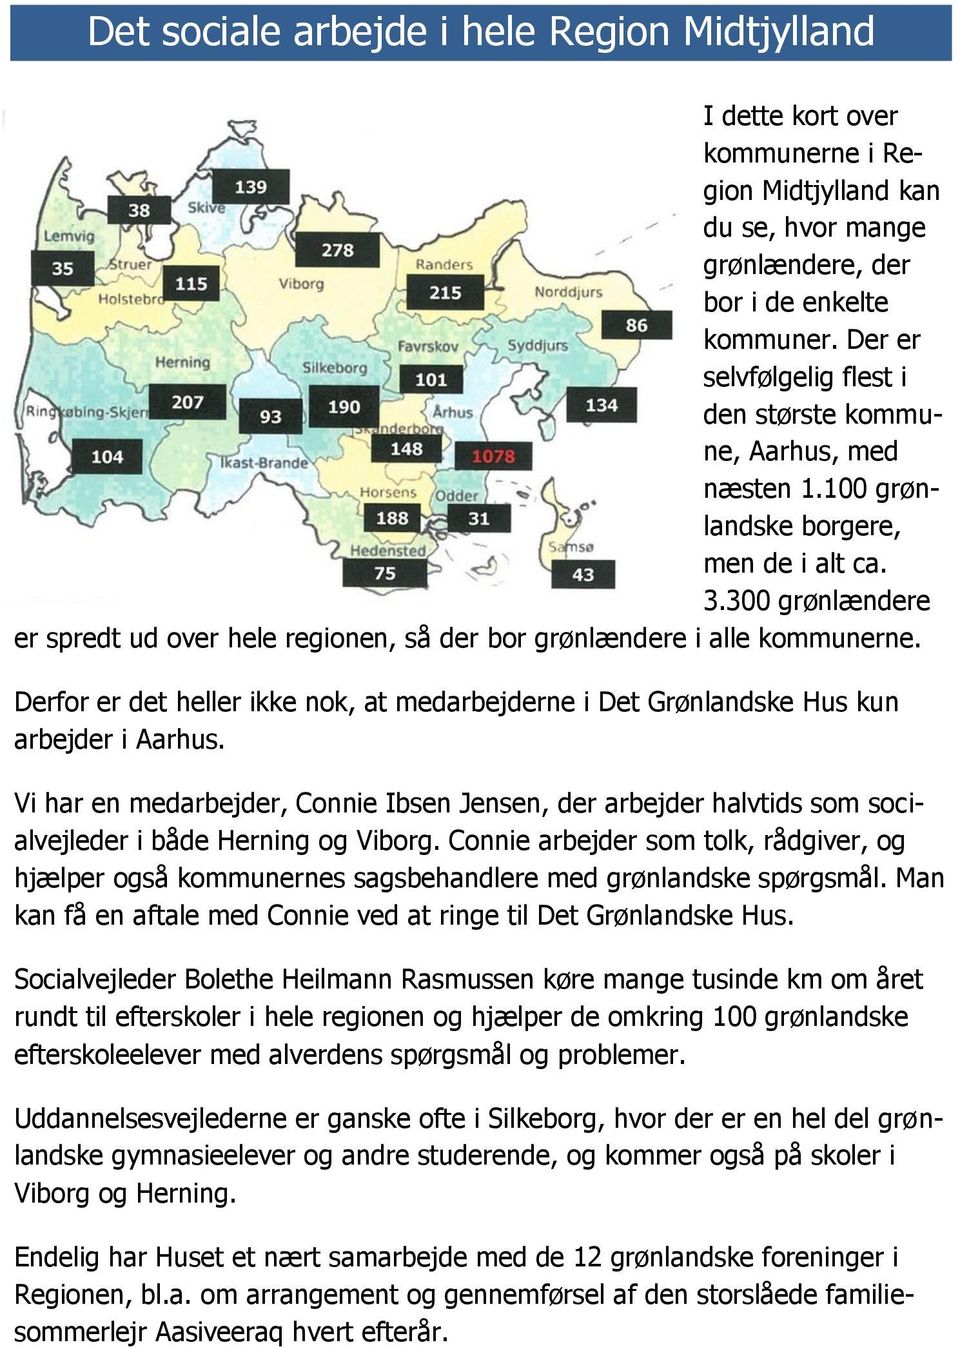 300 grønlændere er spredt ud over hele regionen, så der bor grønlændere i alle kommunerne. Derfor er det heller ikke nok, at medarbejderne i Det Grønlandske Hus kun arbejder i Aarhus.